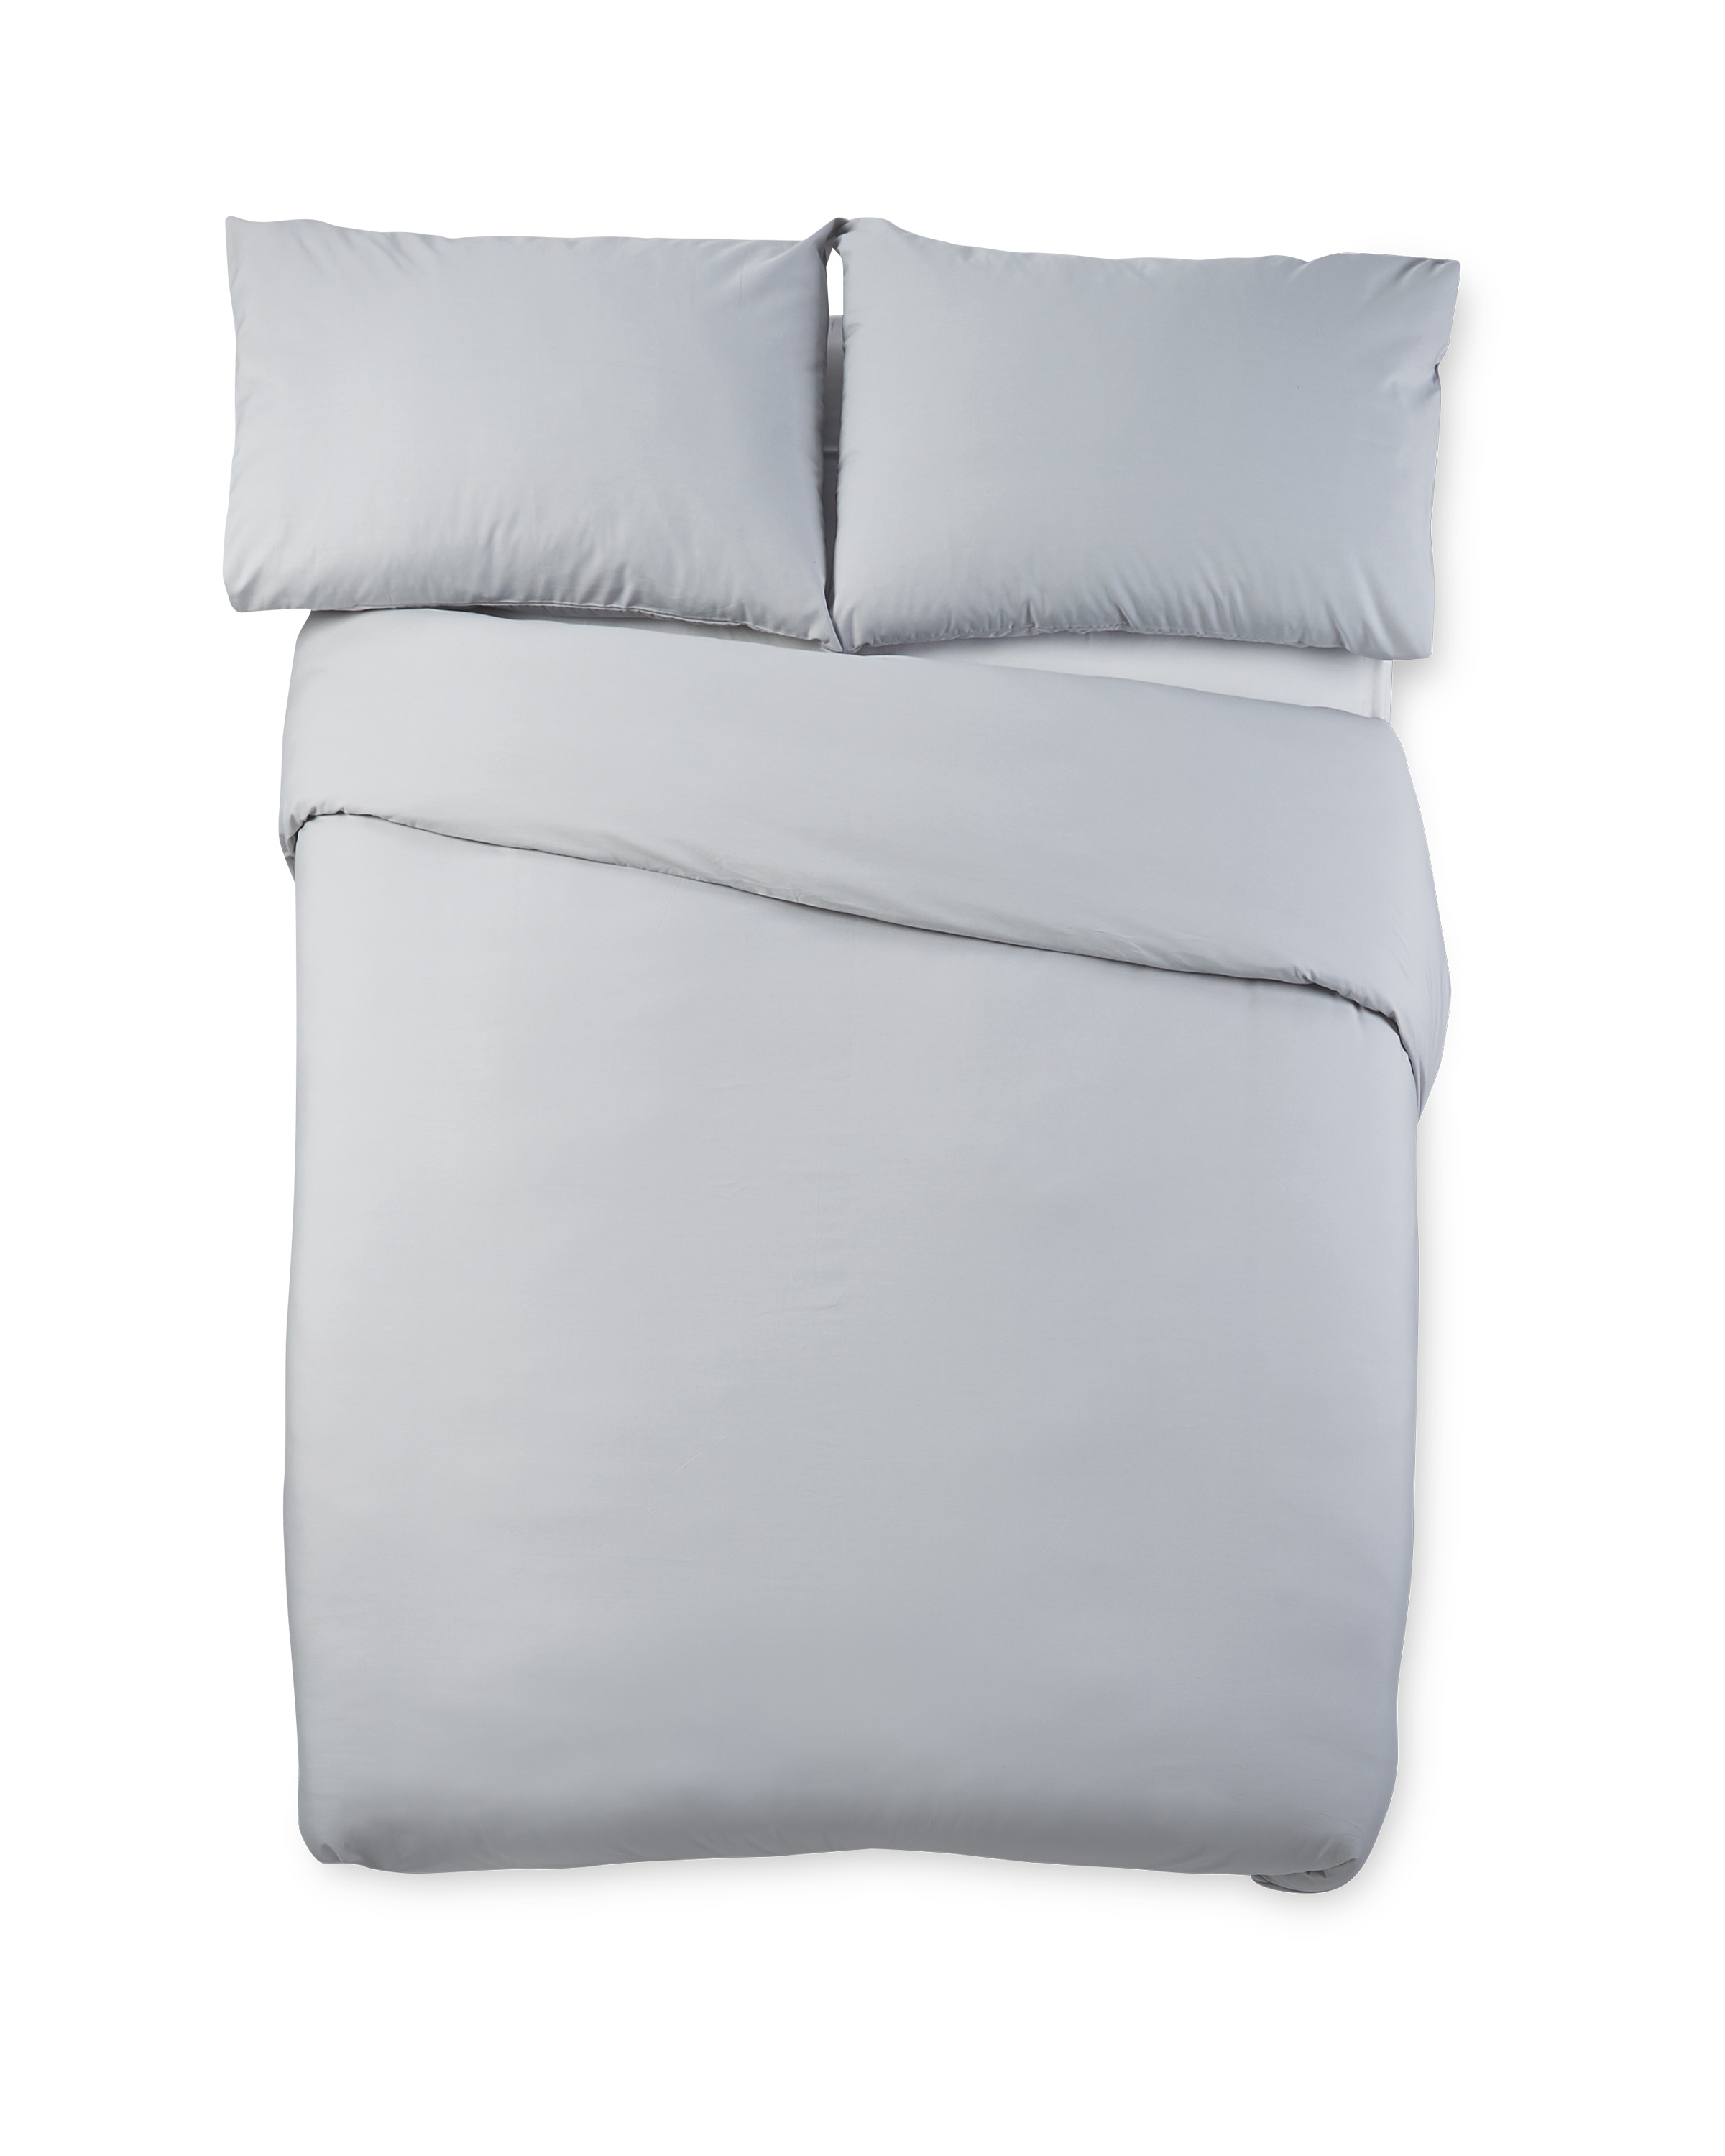 Grey Cooling Super King Duvet Set Aldi Uk, What Size Duvet For A Super King Bed